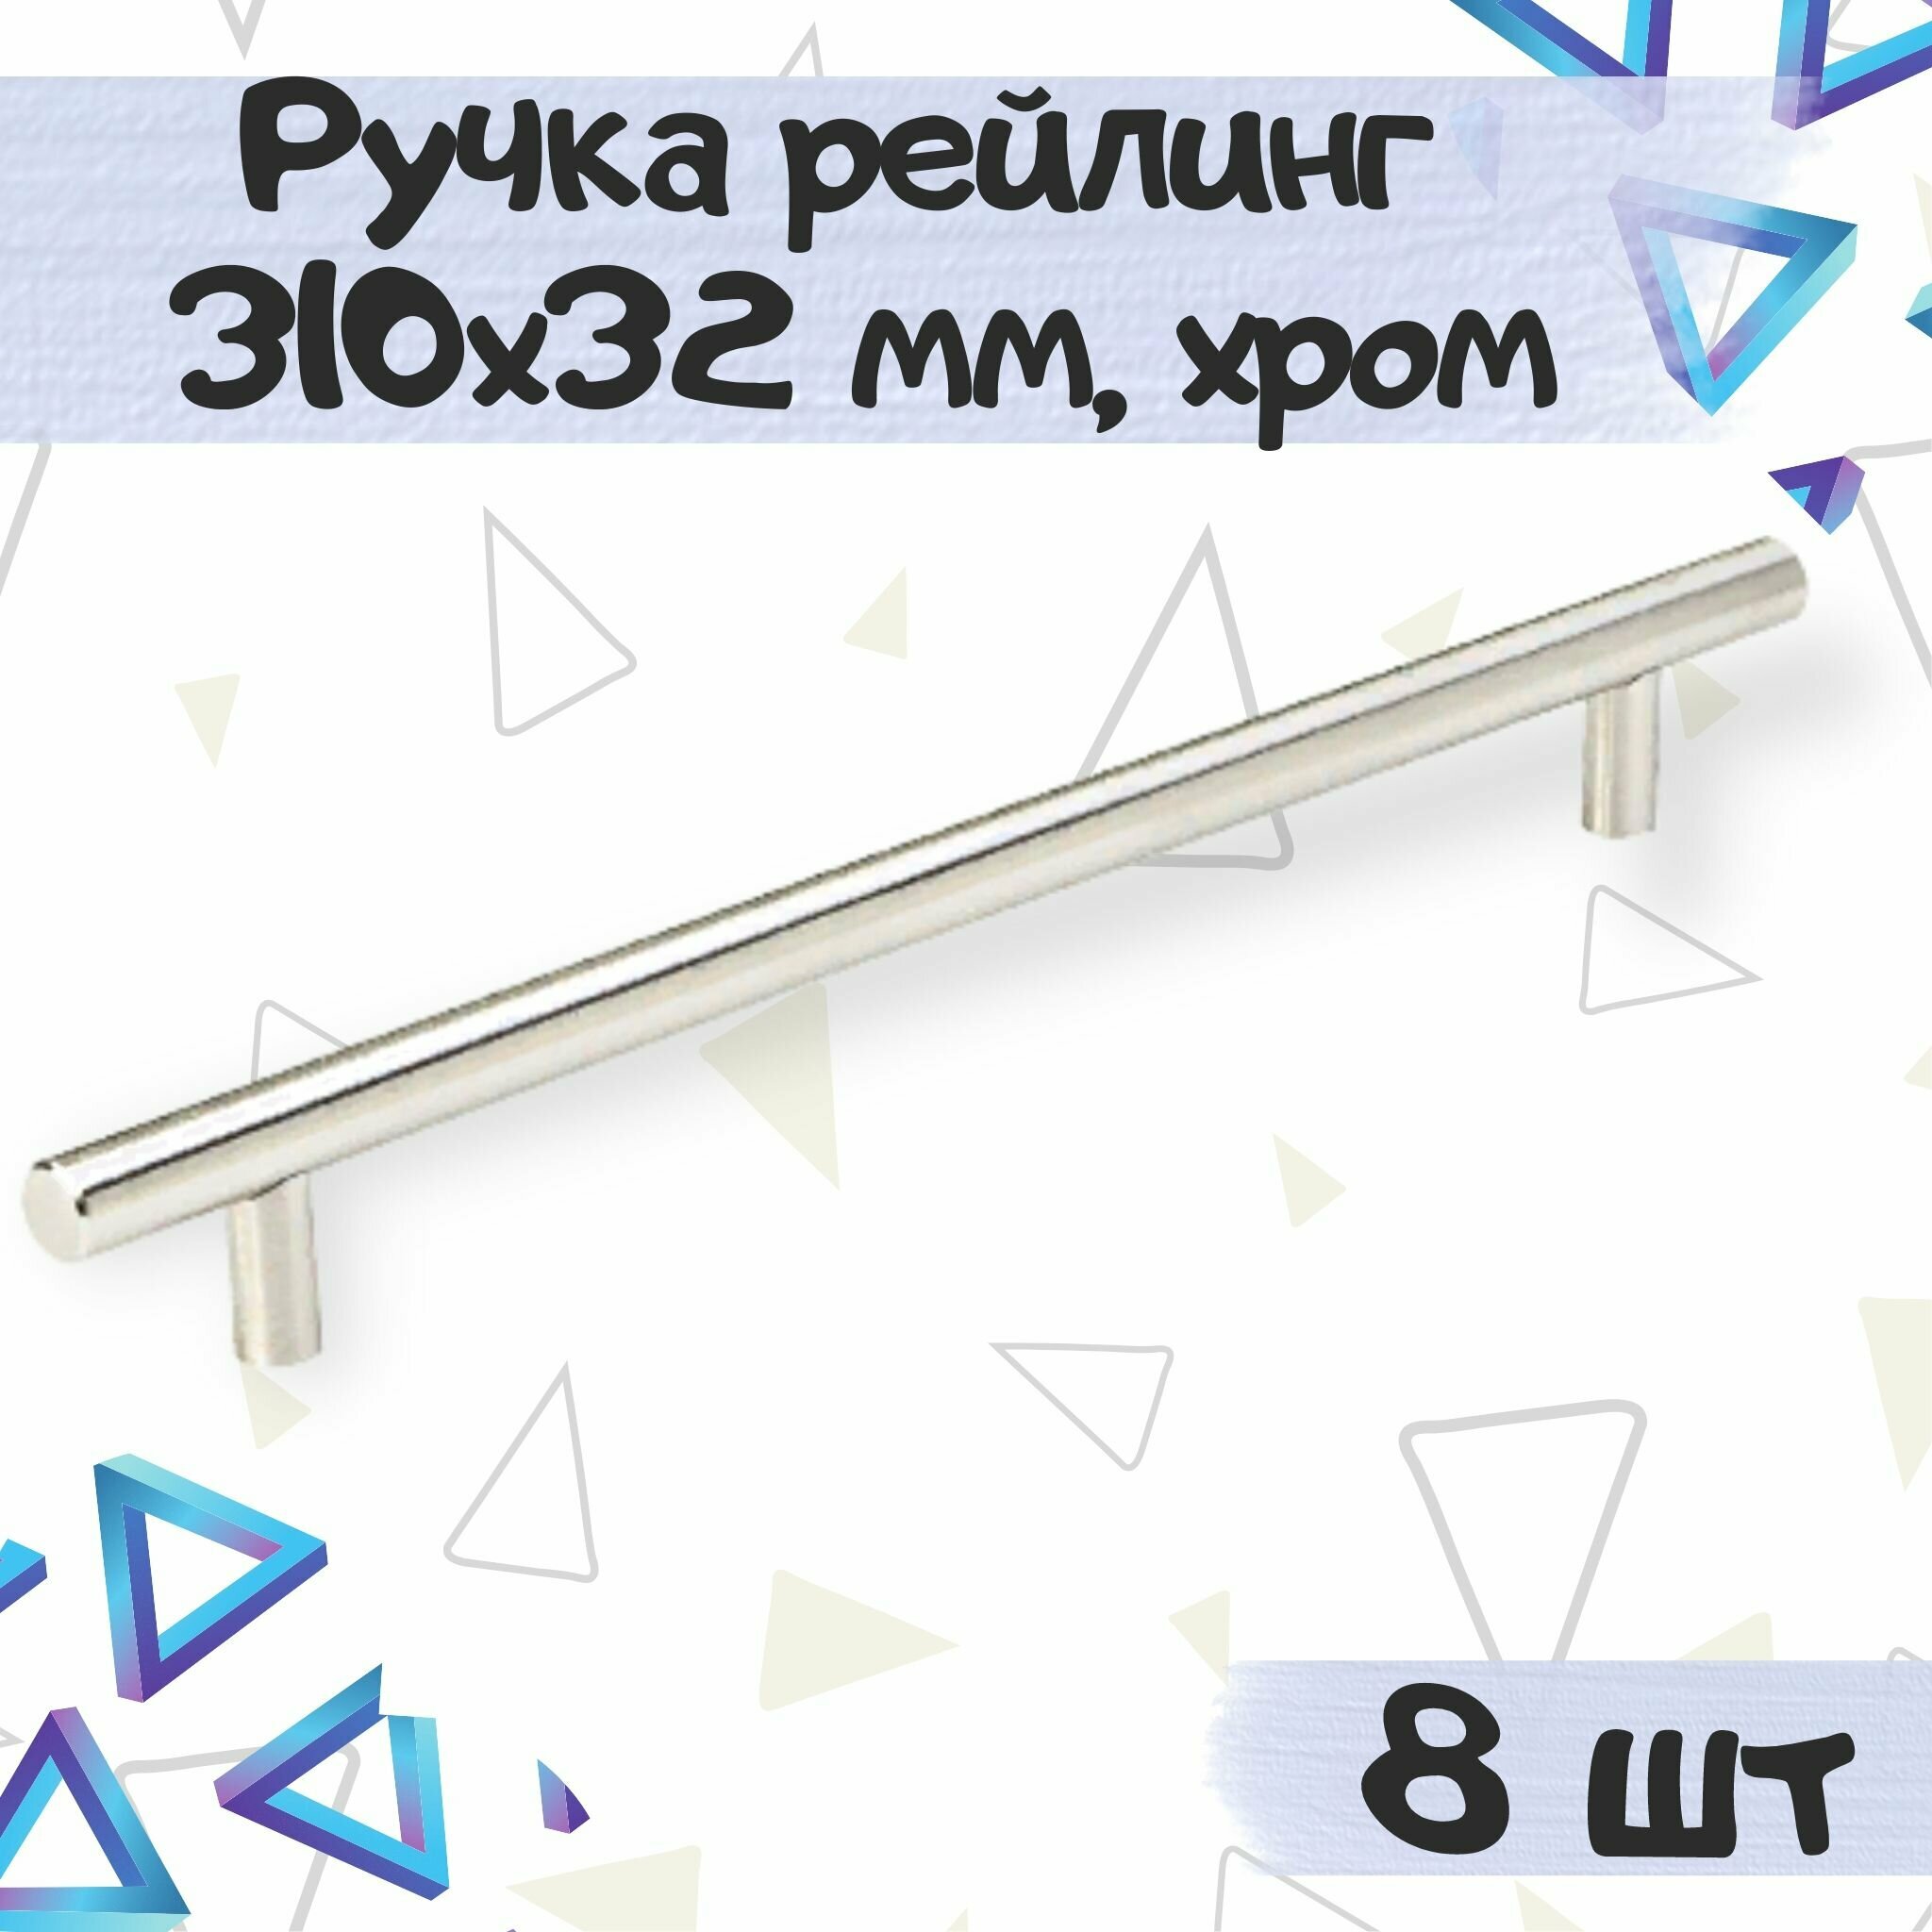 Ручка-рейлинг 316х32 мм межцентровое расстояние 256 мм нержавеющая сталь цвет - хром 8 шт.